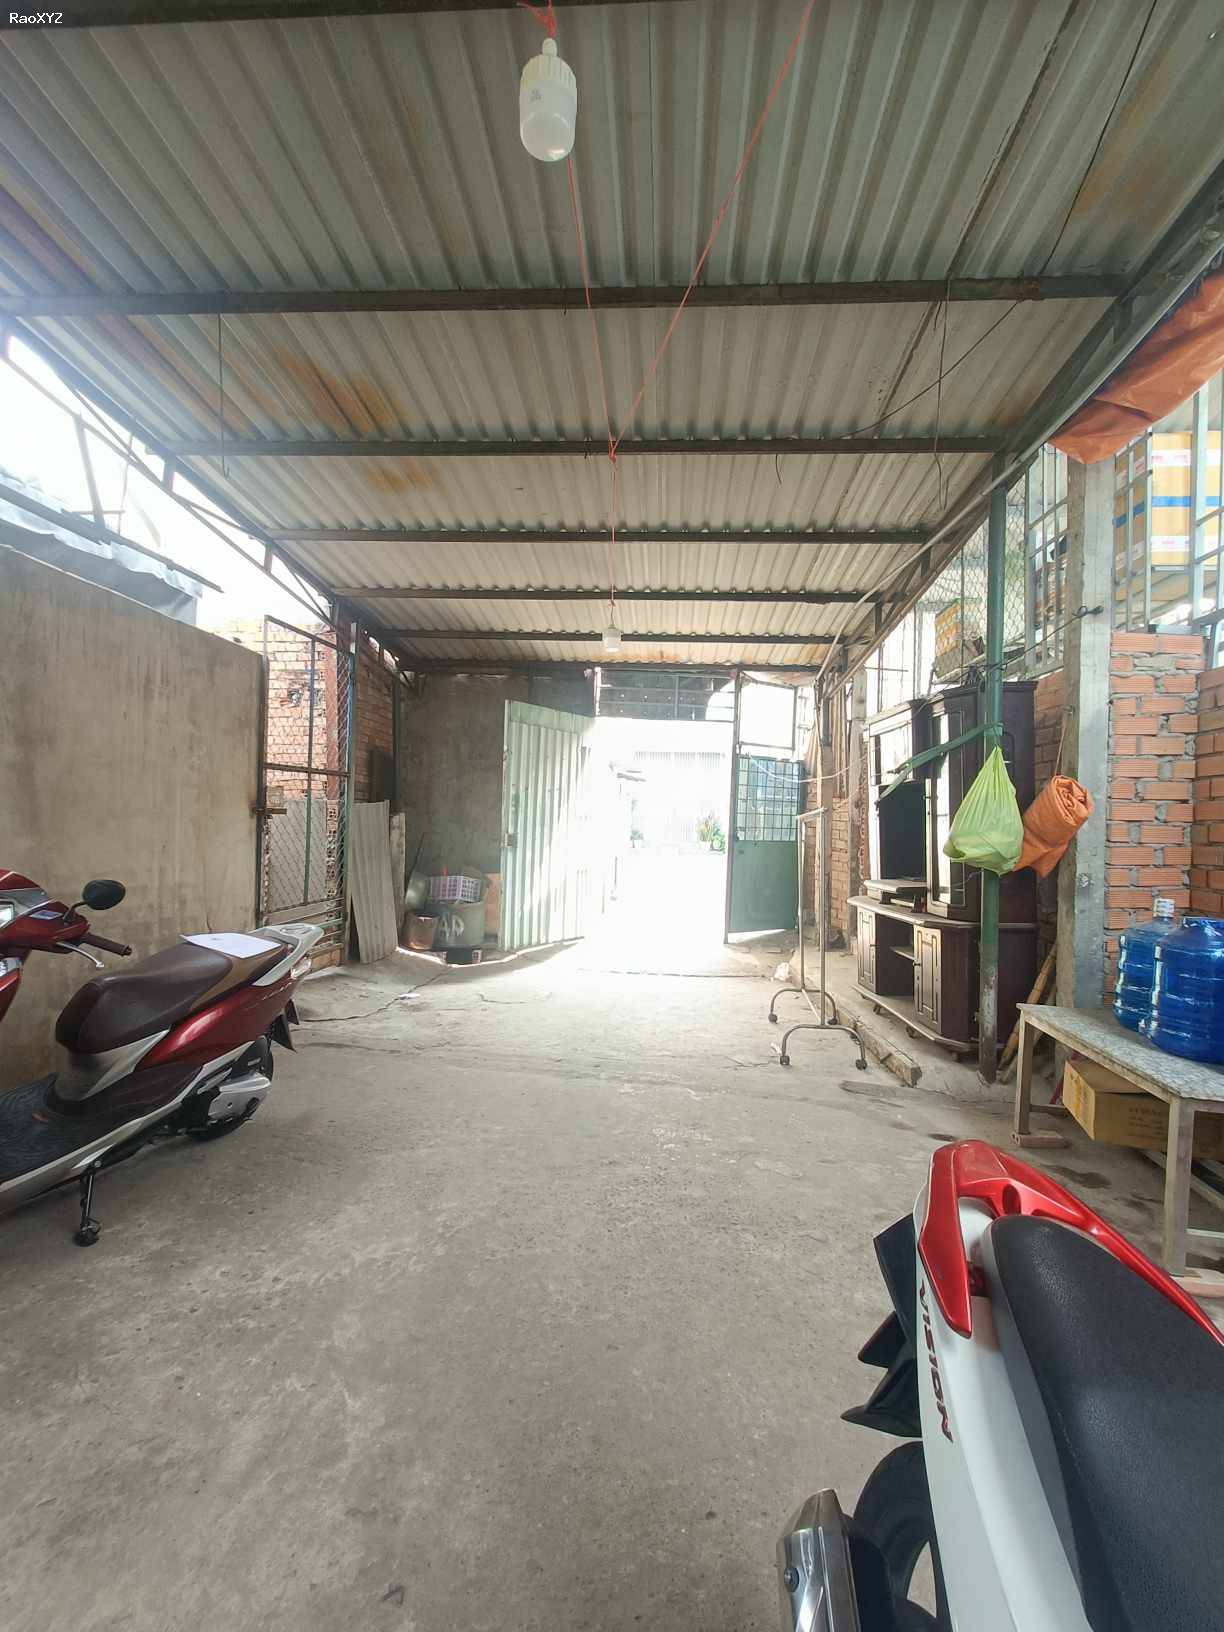 Bán nhà đường Lê Trọng Tấn 100m2 gần kcn Tân Bình tiện xây trọ, làm xưởng.